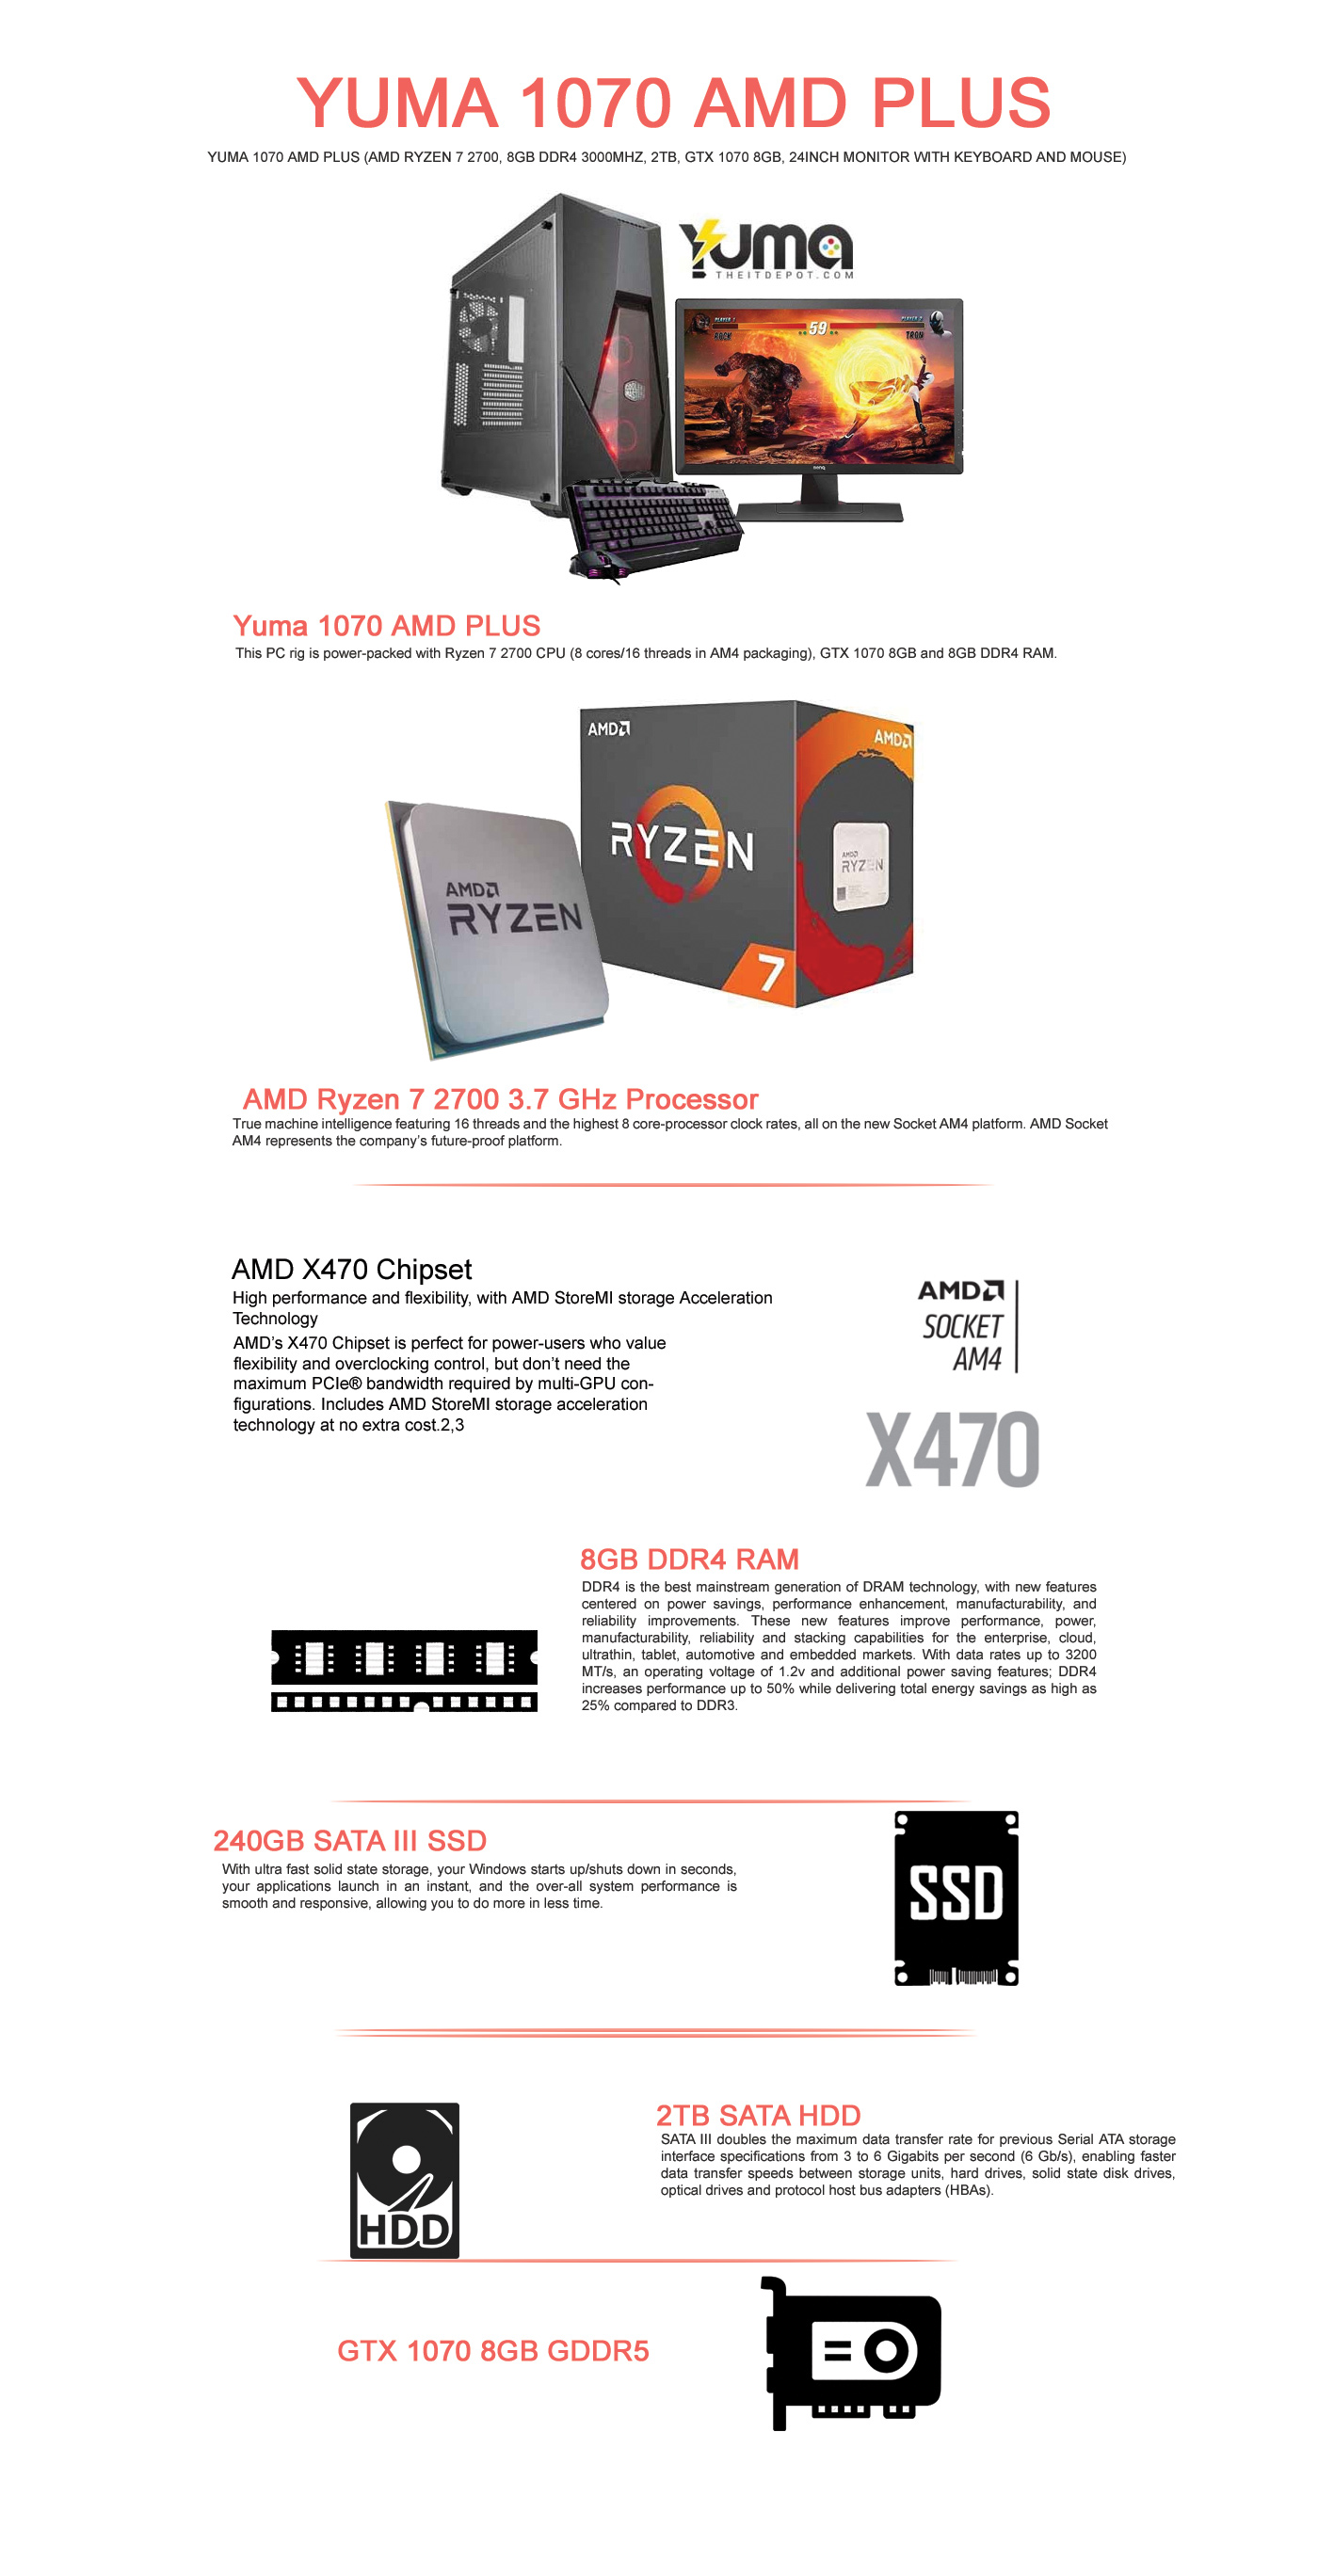  Buy Online Yuma 1070 AMD Plus (AMD Ryzen 7 2700, 8GB DDR4 3000MHz, 2TB, GTX 1070 8GB, 24inch Monitor with Keyboard and Mouse)